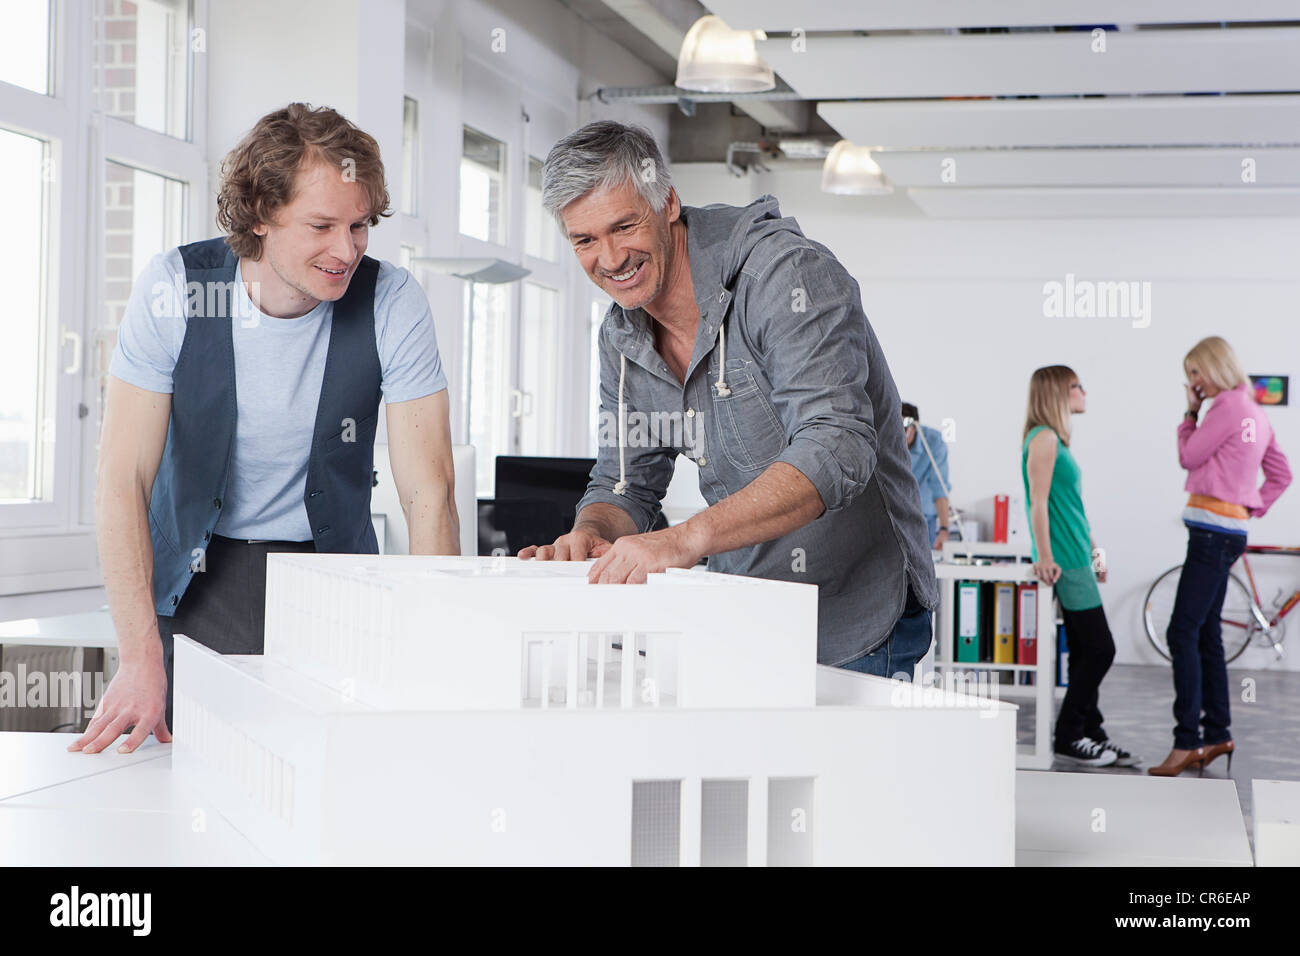 Deutschland, Bayern, München, Männer zusehen Architekturmodell in Büro, Kollegen reden im Hintergrund Stockfoto